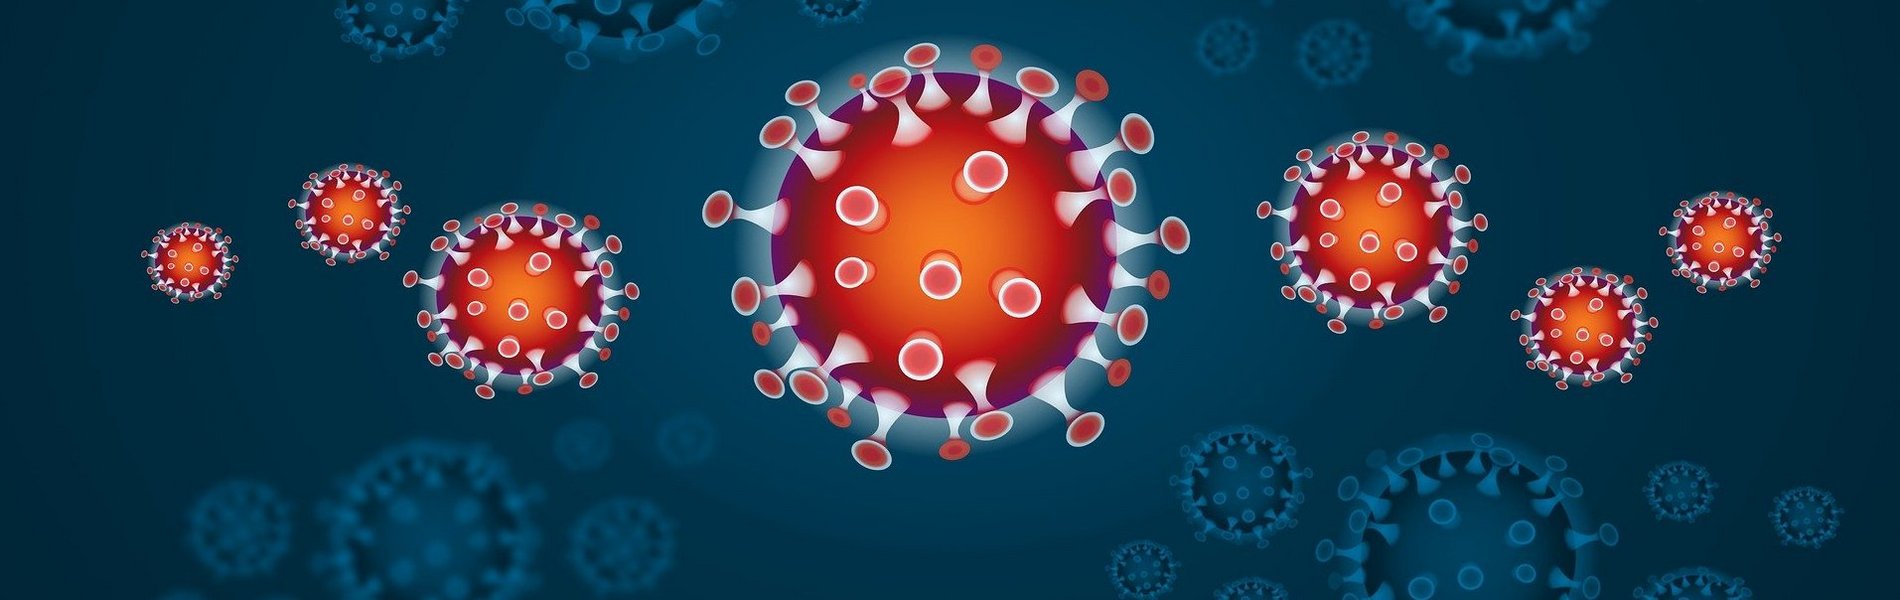 Bild von stilisiertem Corona-Virus